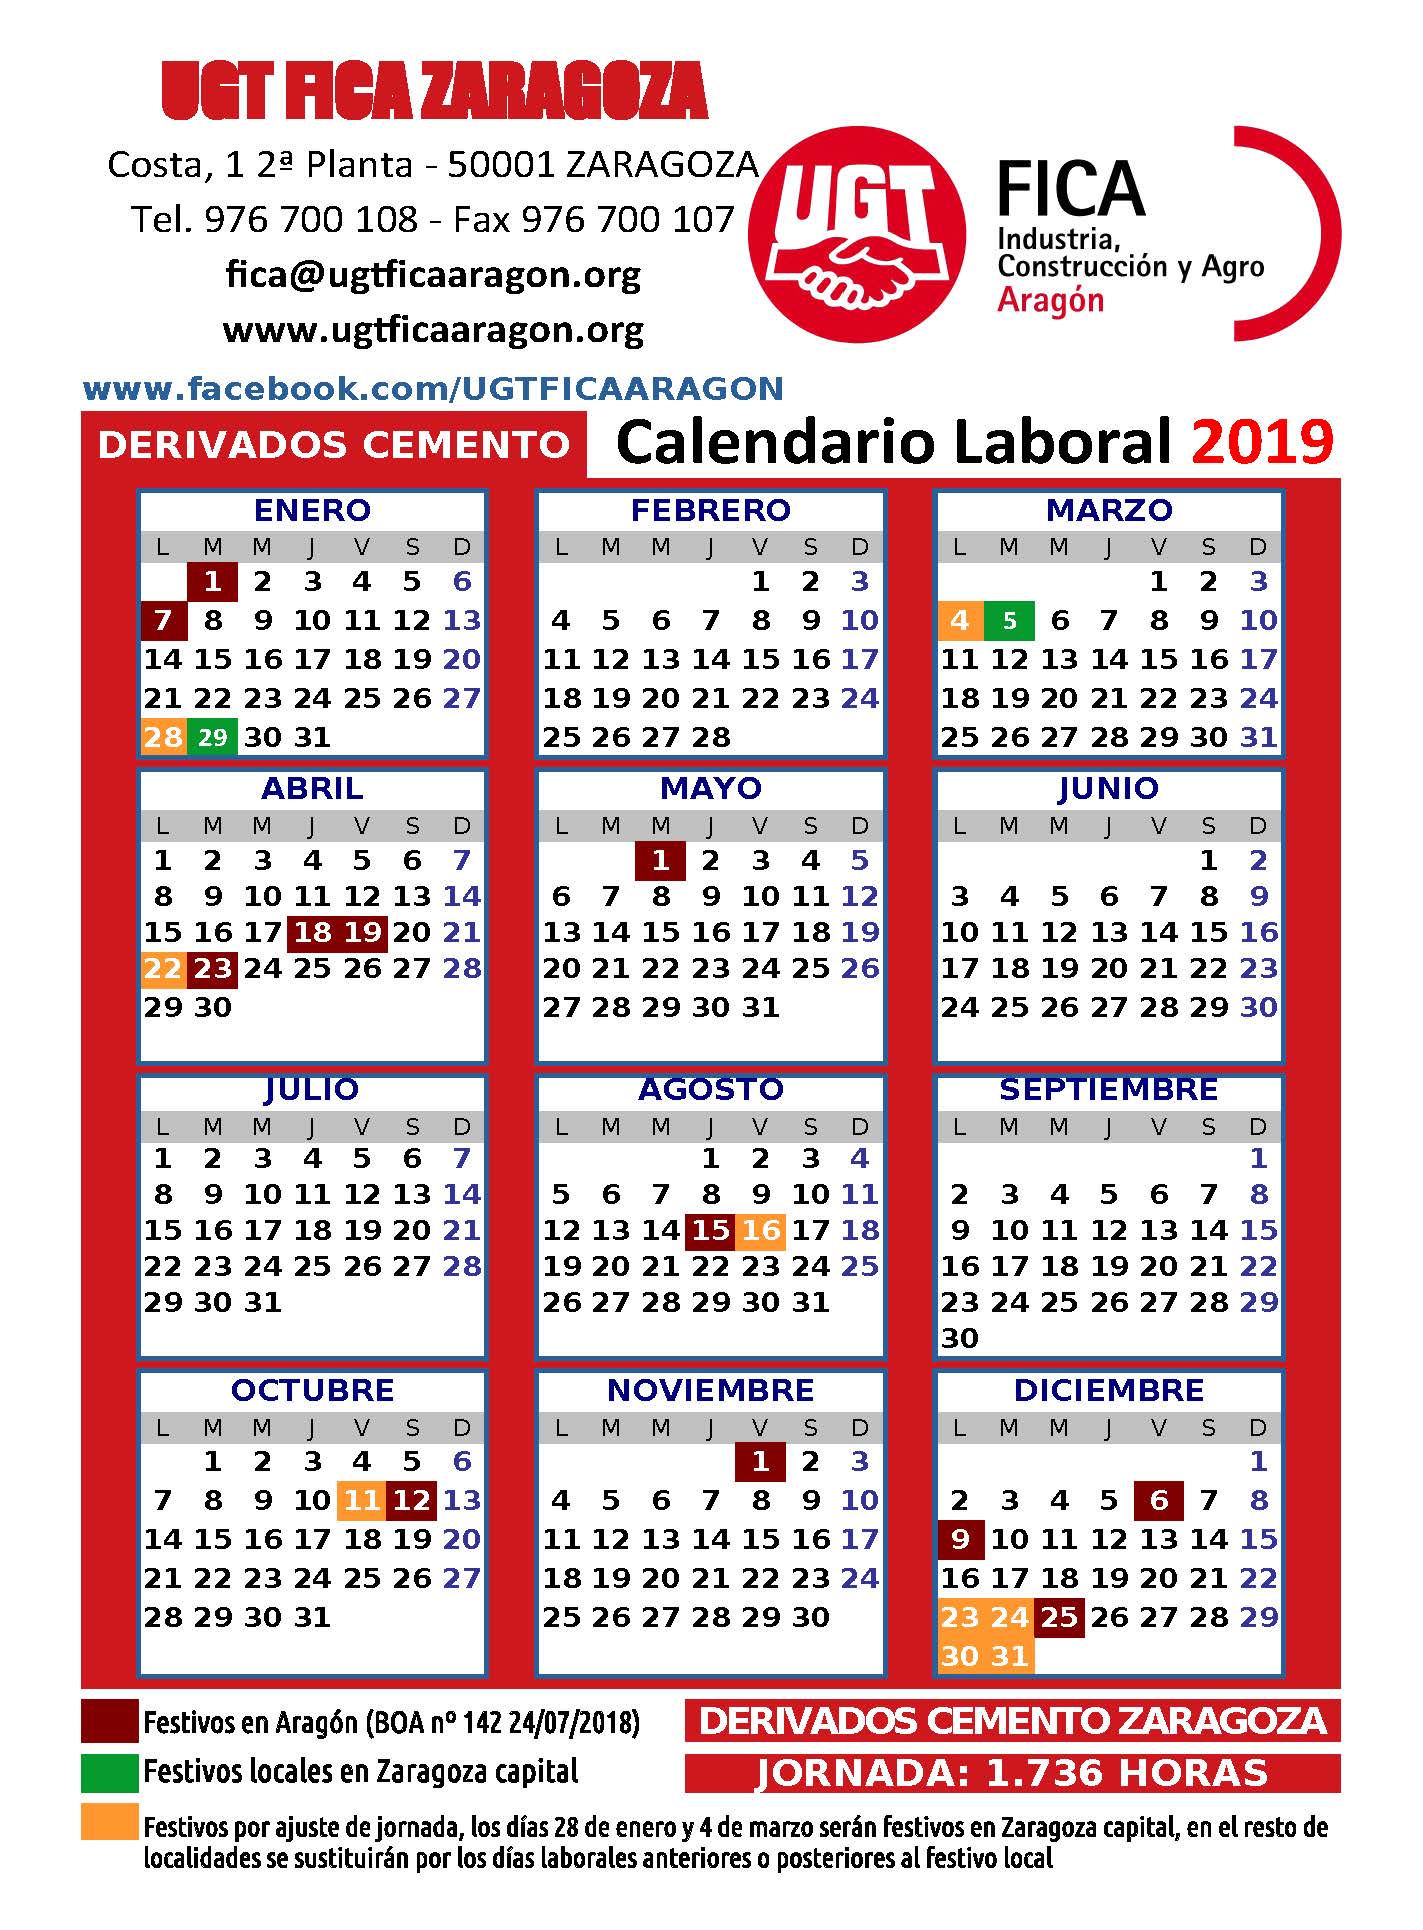 Calendario Derivados Zaragoza 2019.jpg